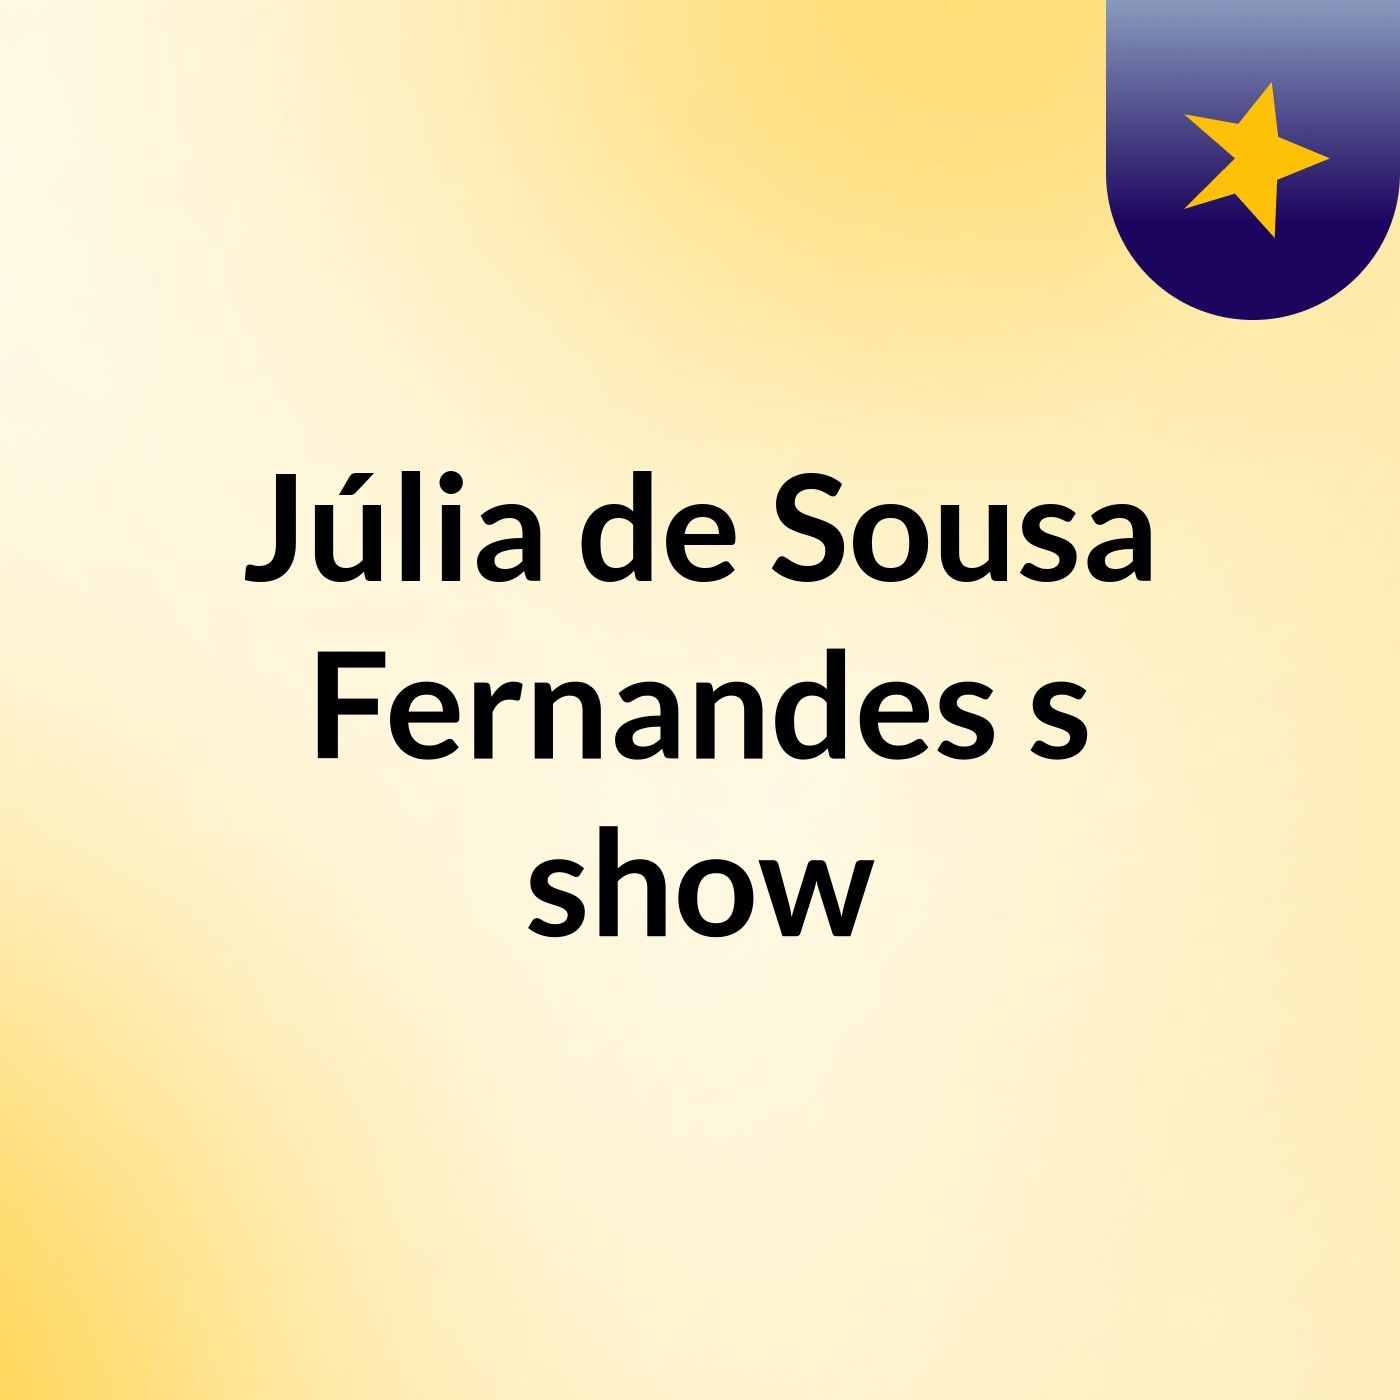 Júlia de Sousa Fernandes's show